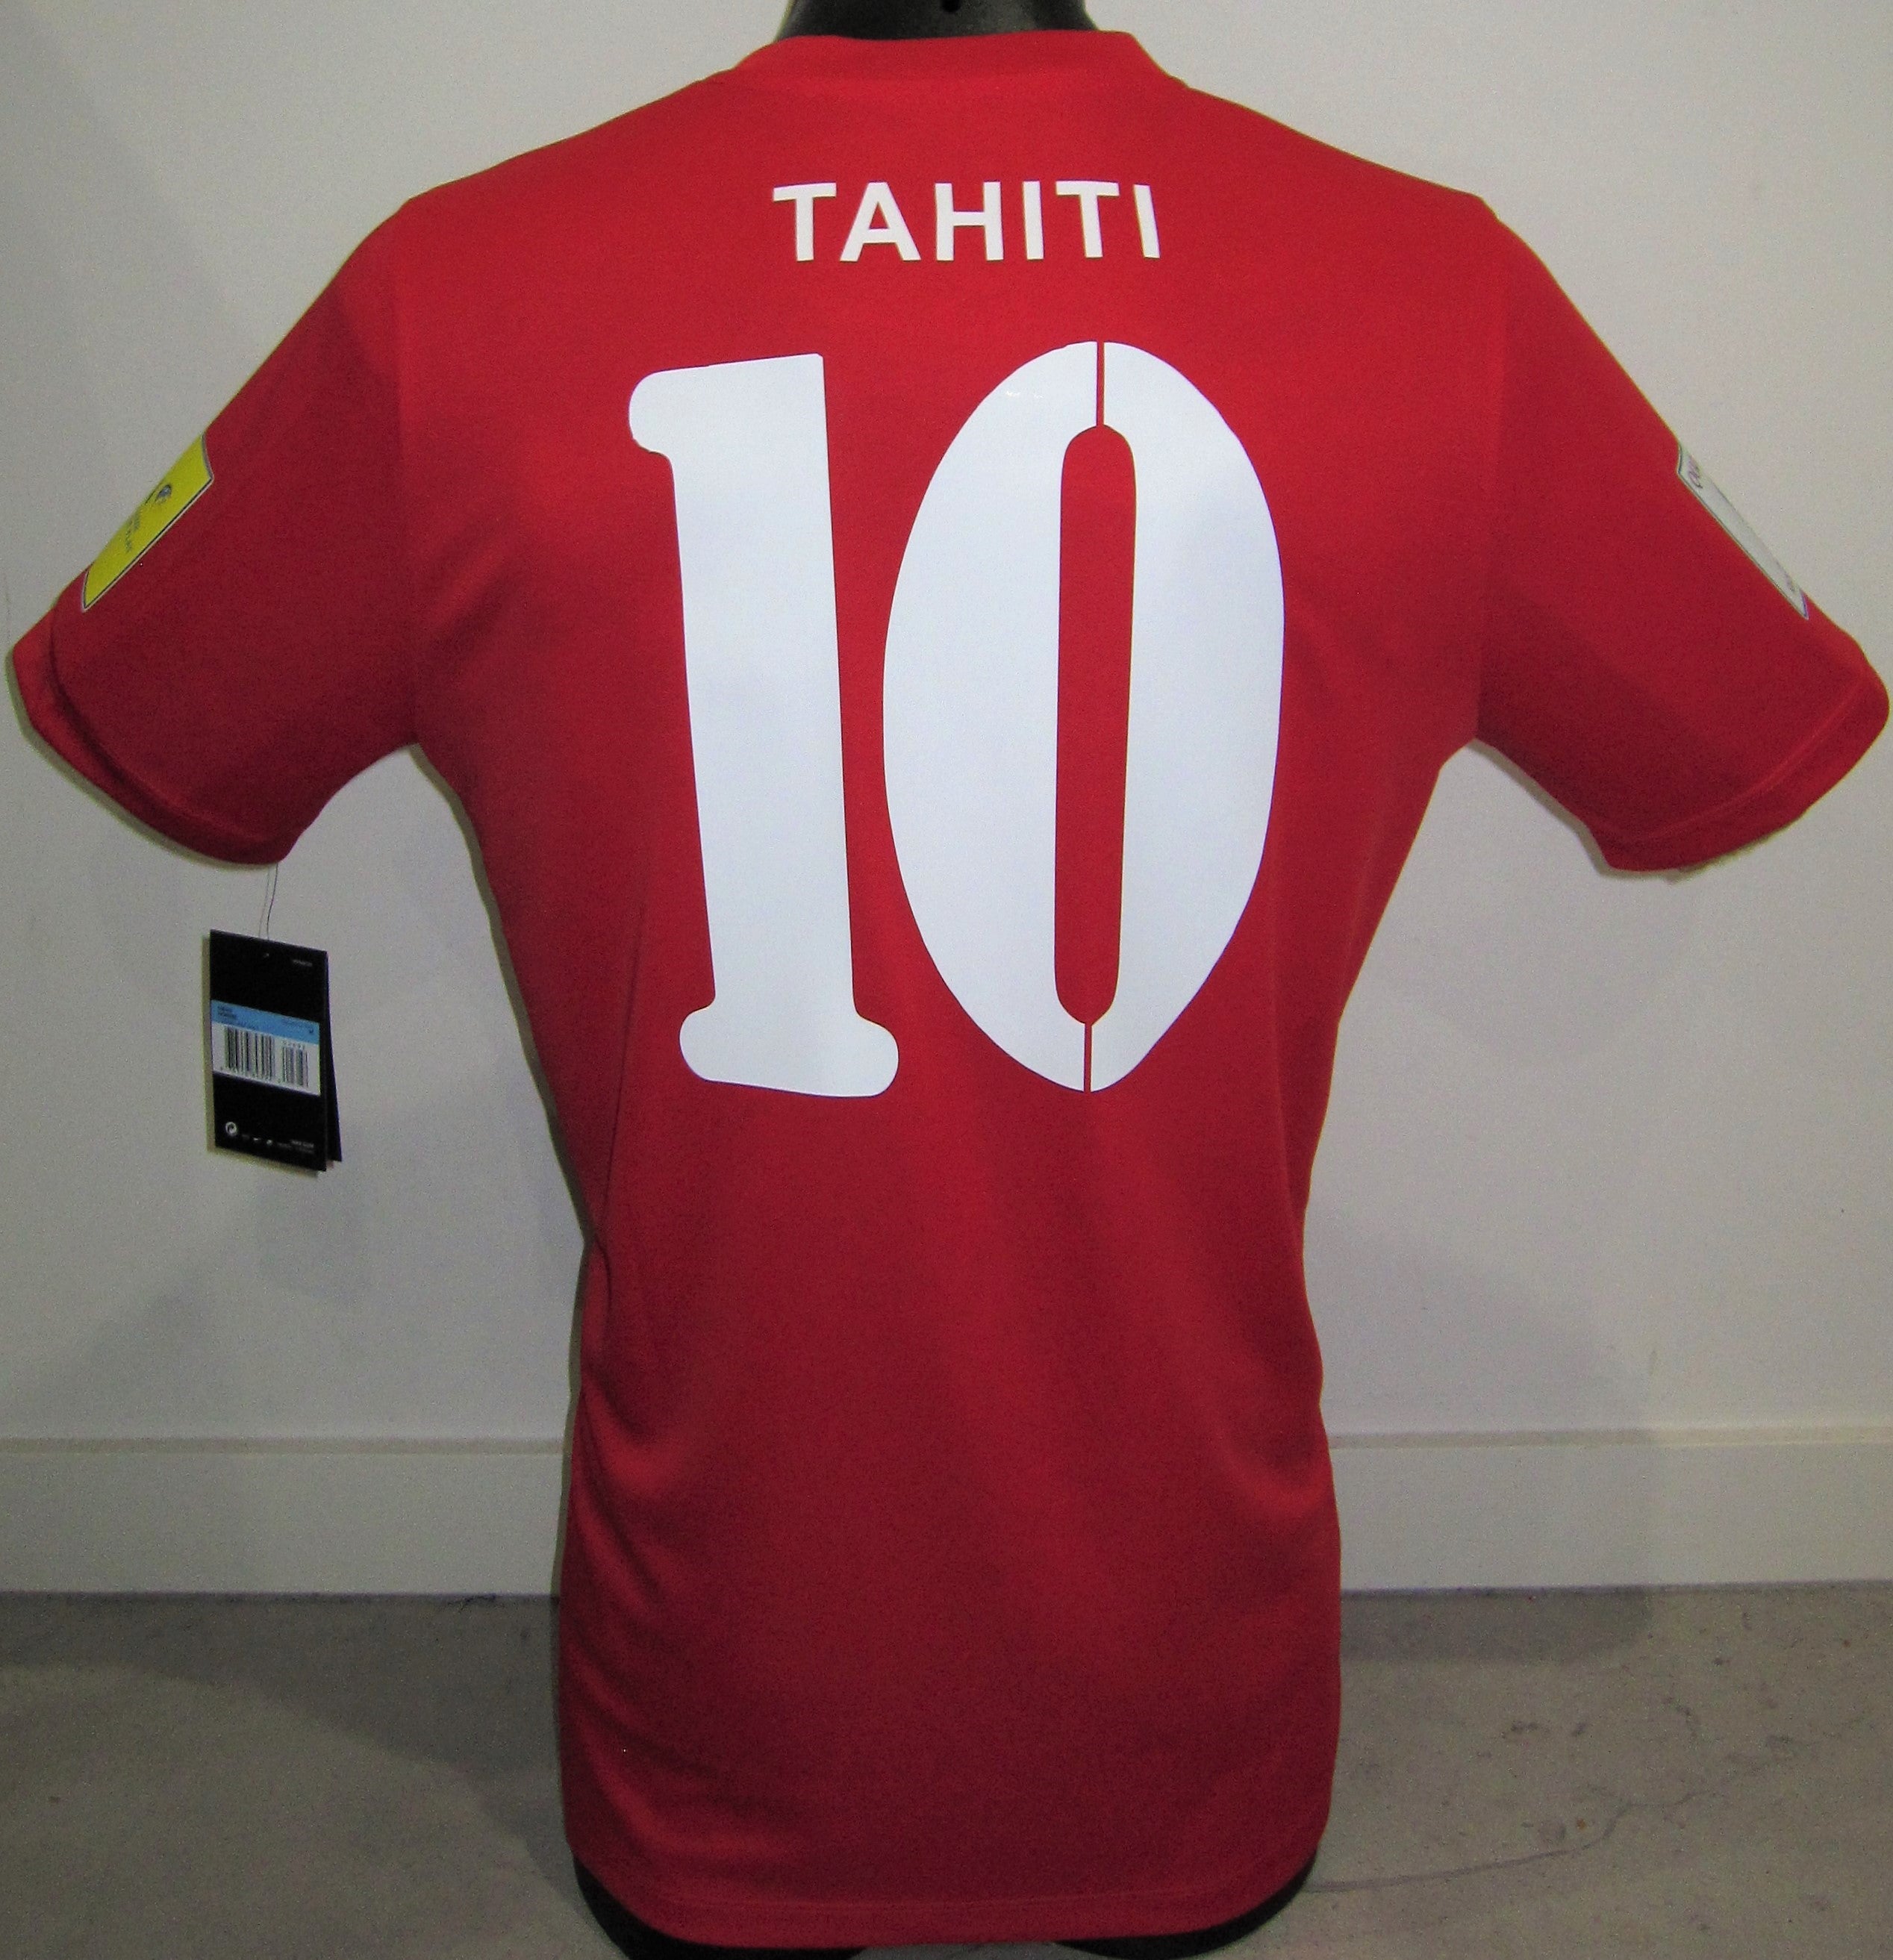 Tahiti 2016-17 Home (#10- TEHAU) Jersey/Shirt